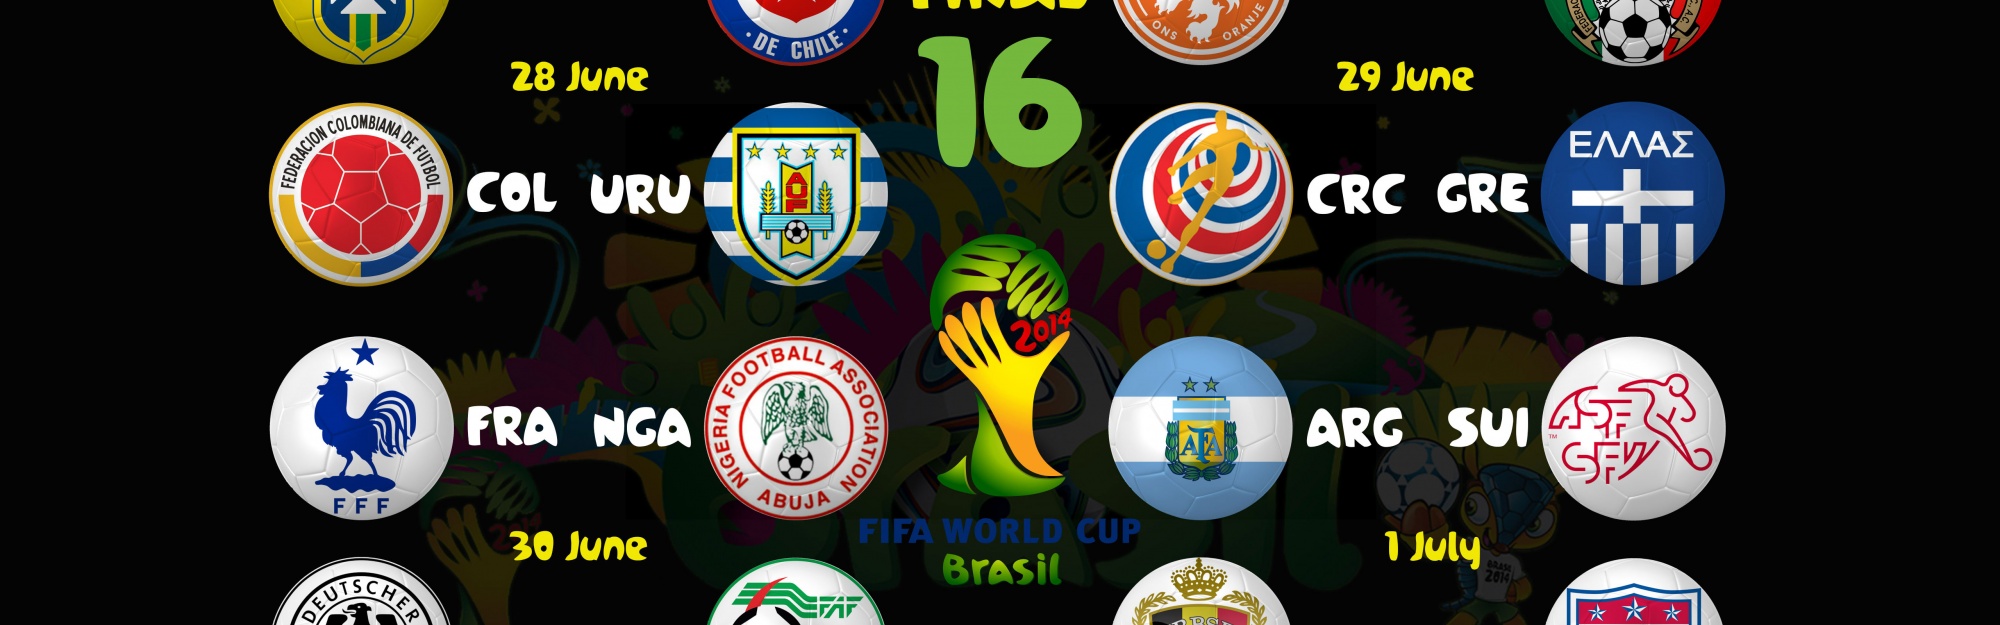 Brazil 2014 WC Round Of 16 Bracket